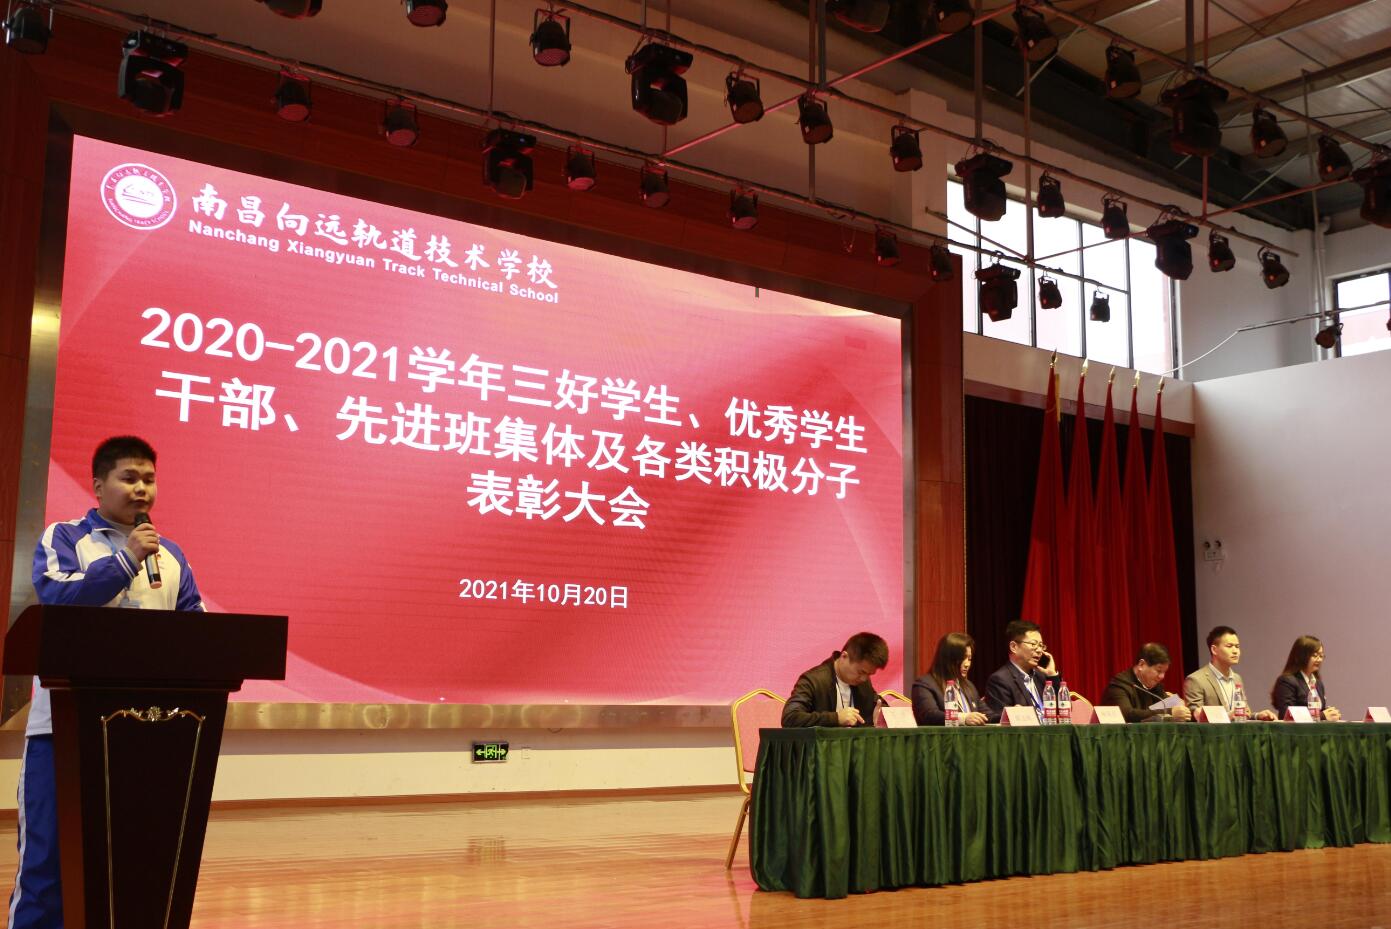 树榜样力量，促青年奋进—南昌向远轨道技术学校举行2020-2021学年度“评优评先”表彰大会